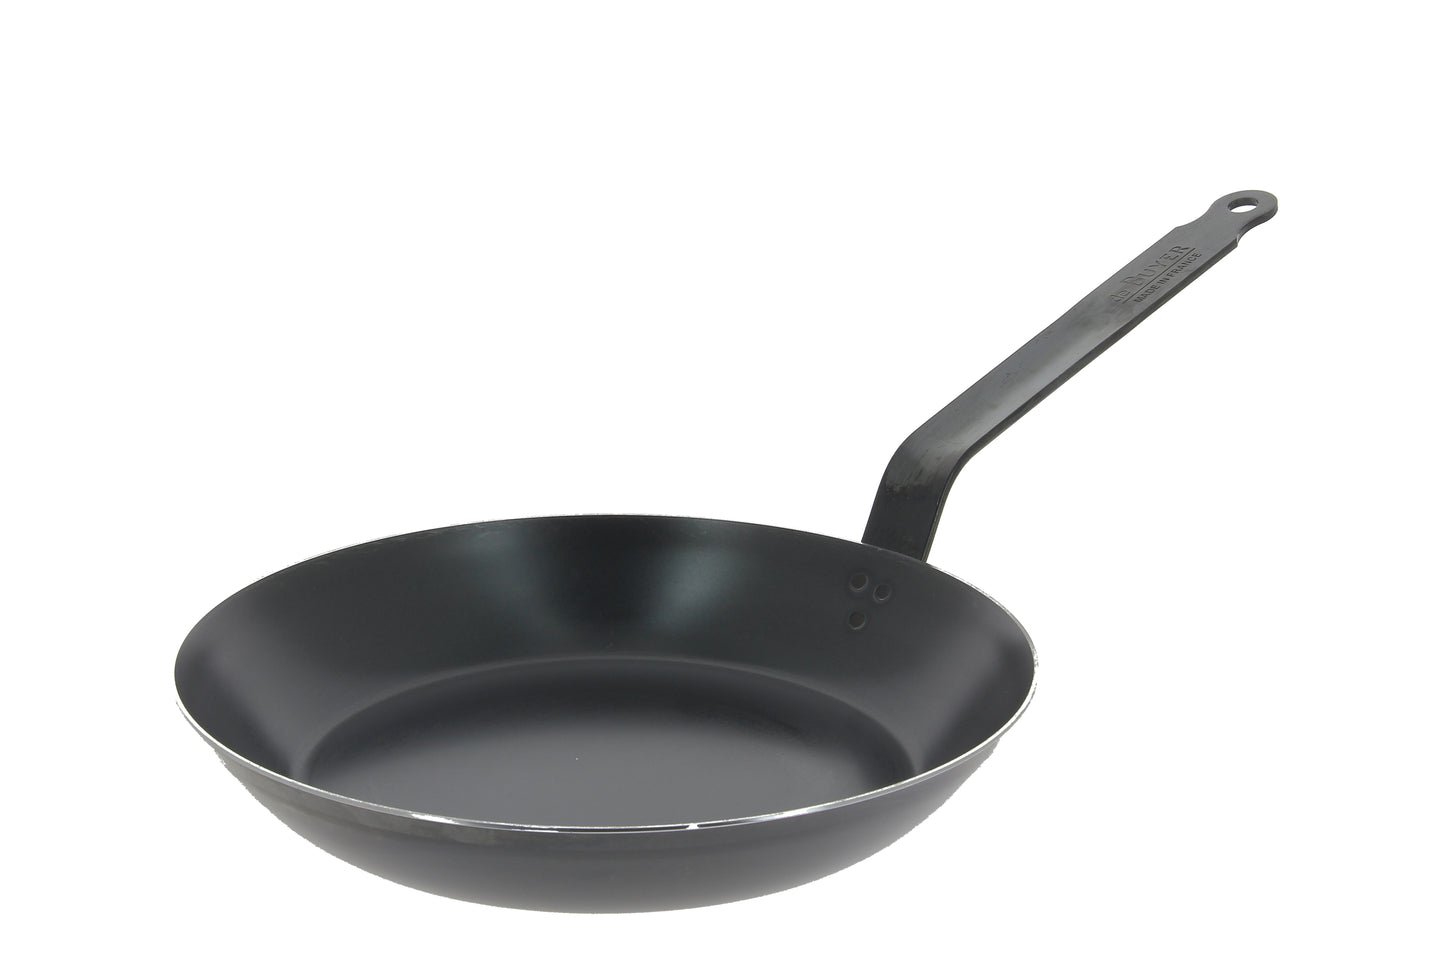 De Buyer Blue Carbon frying pan